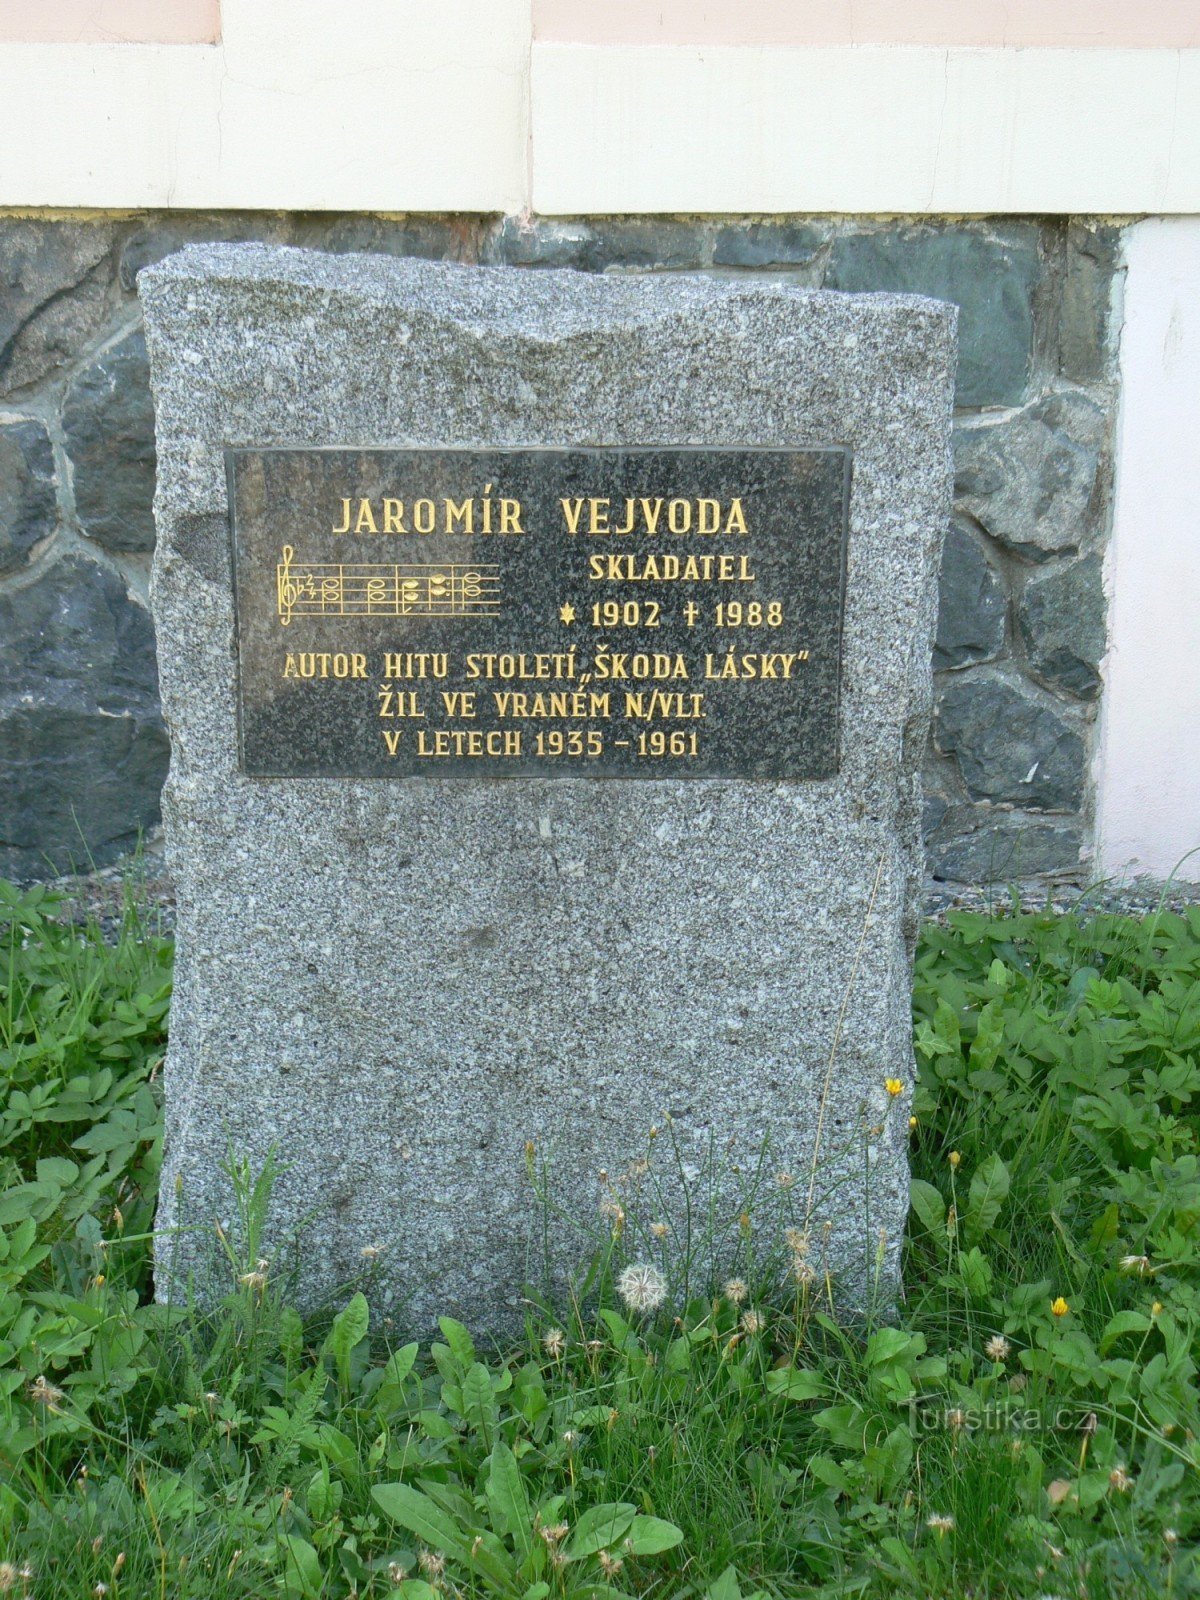 Tấm bảng tưởng niệm Jaromír Vejvoda